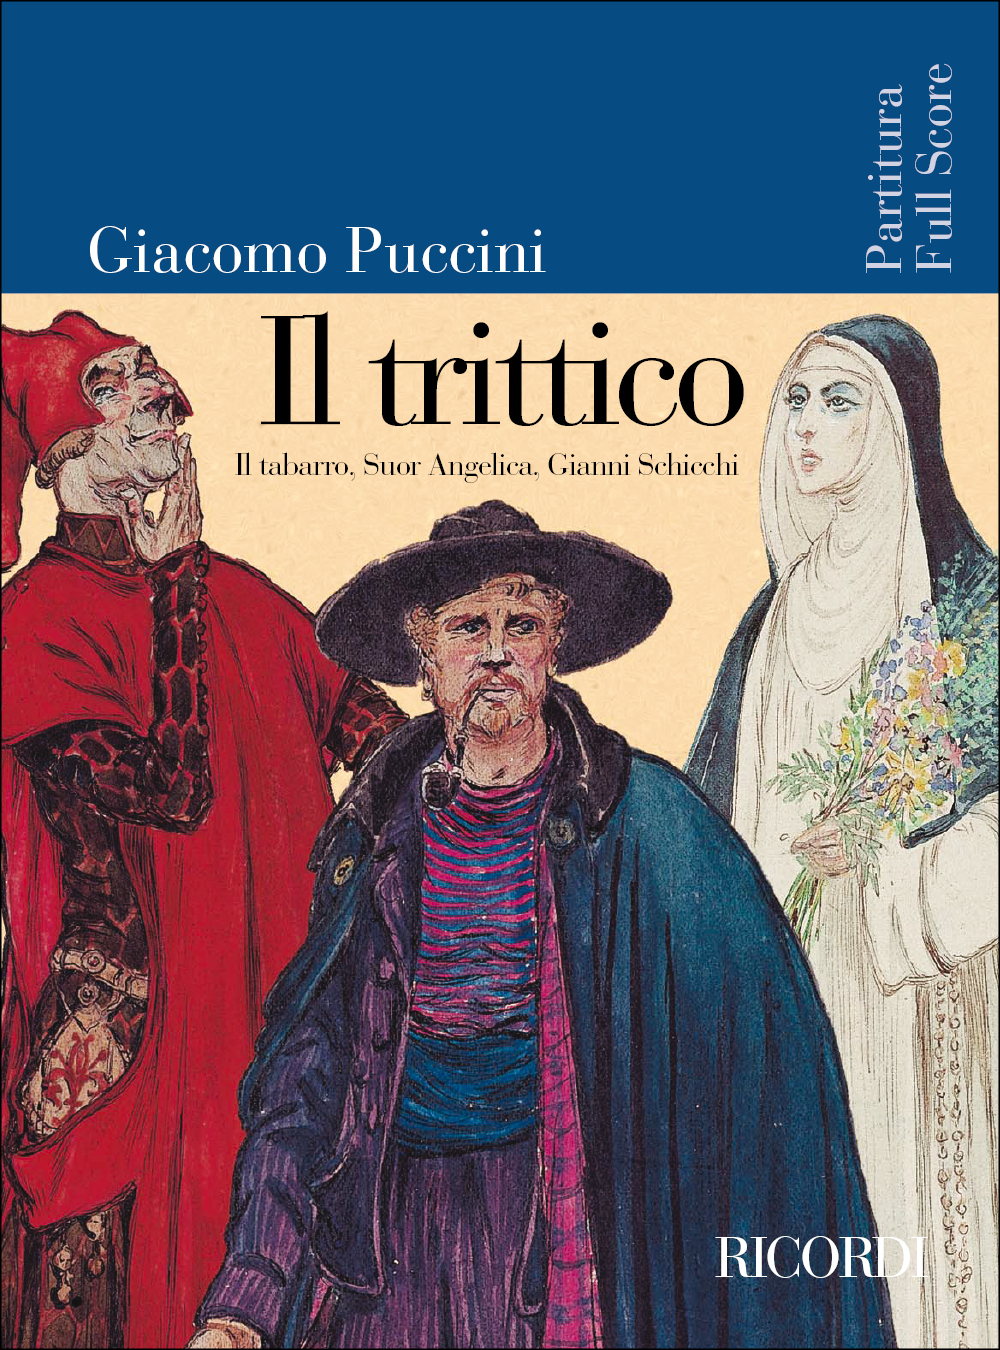 Giacomo Puccini: Il trittico: Opera